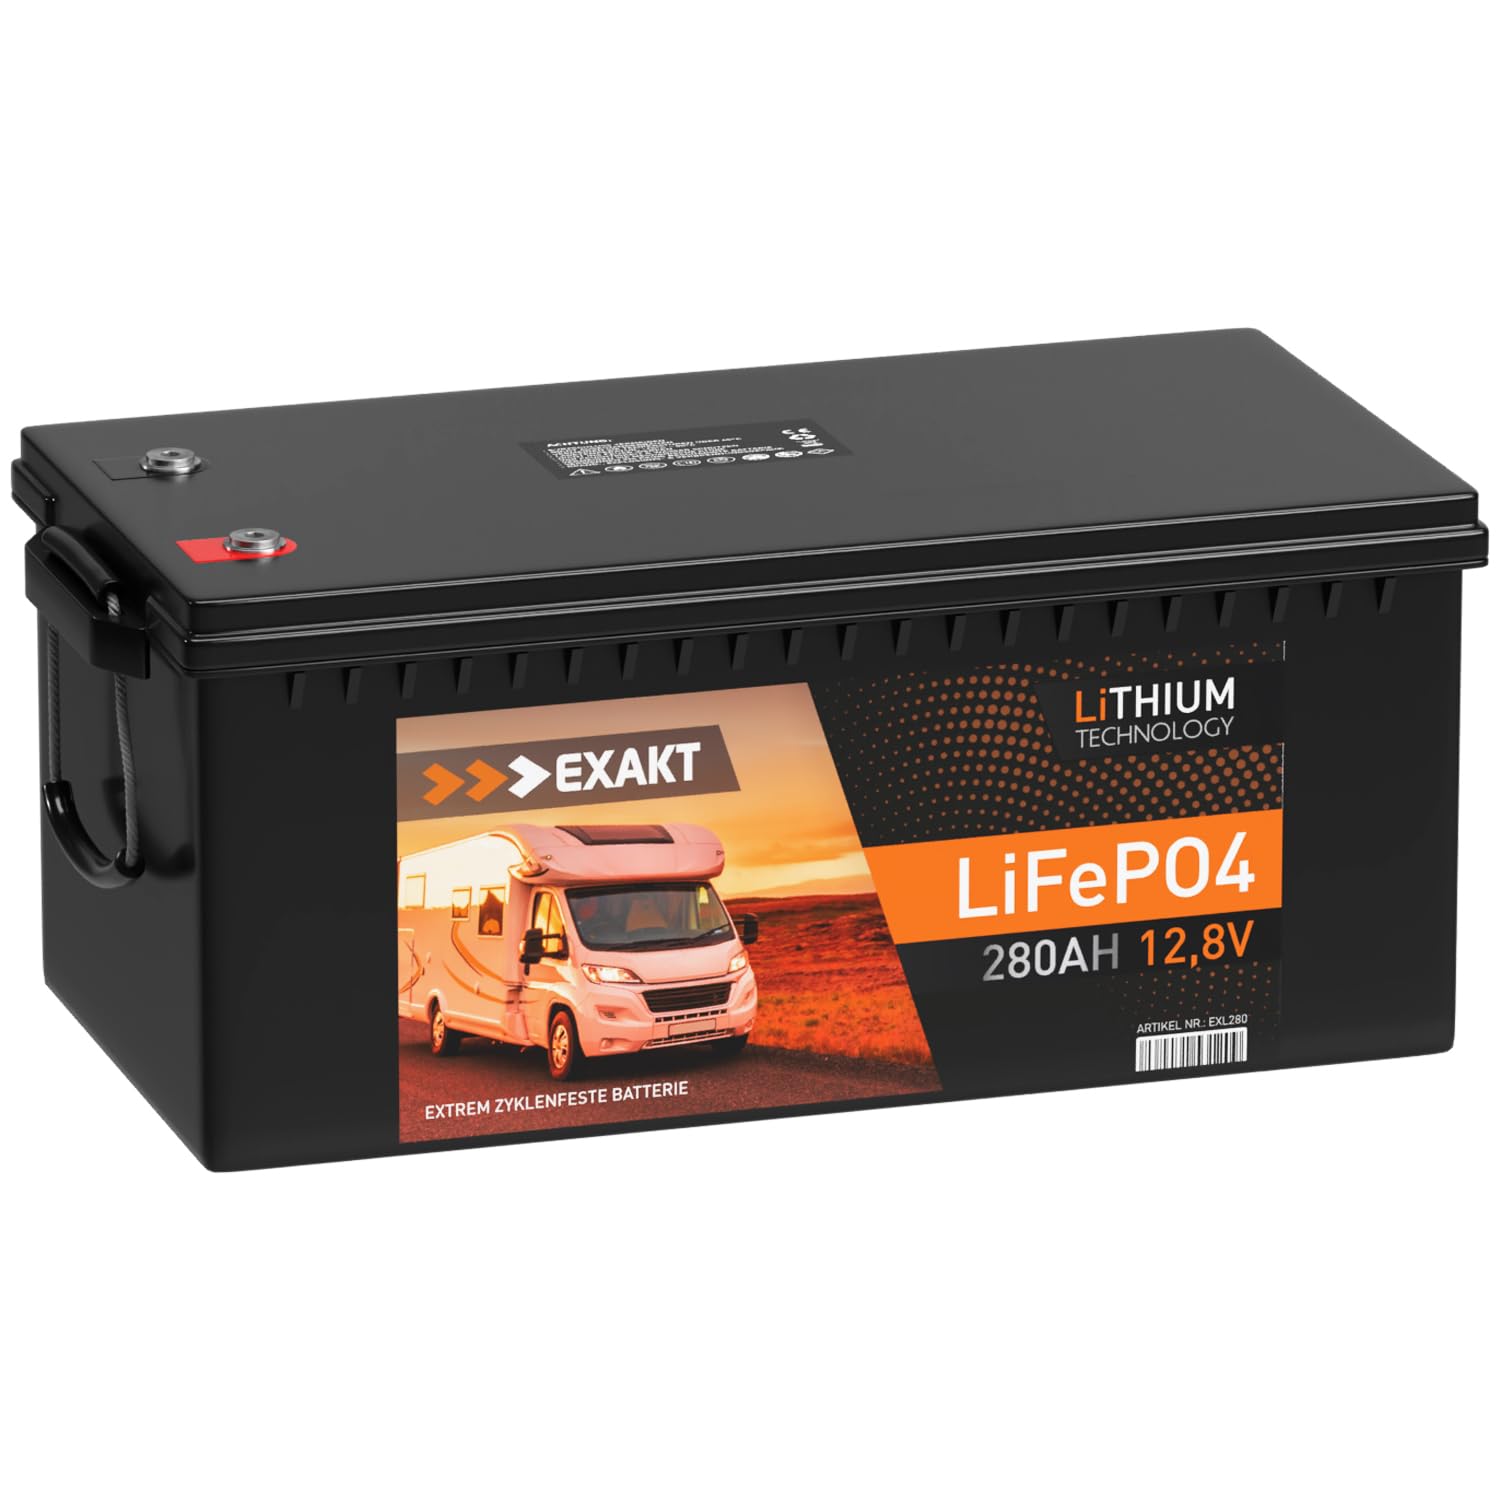 EXAKT LiFePO4 280Ah 12V inkl. BMS Lithium Batterie Solarbatterie Akku Wohnmobil Solar Bootsbatterie USV von Exakt